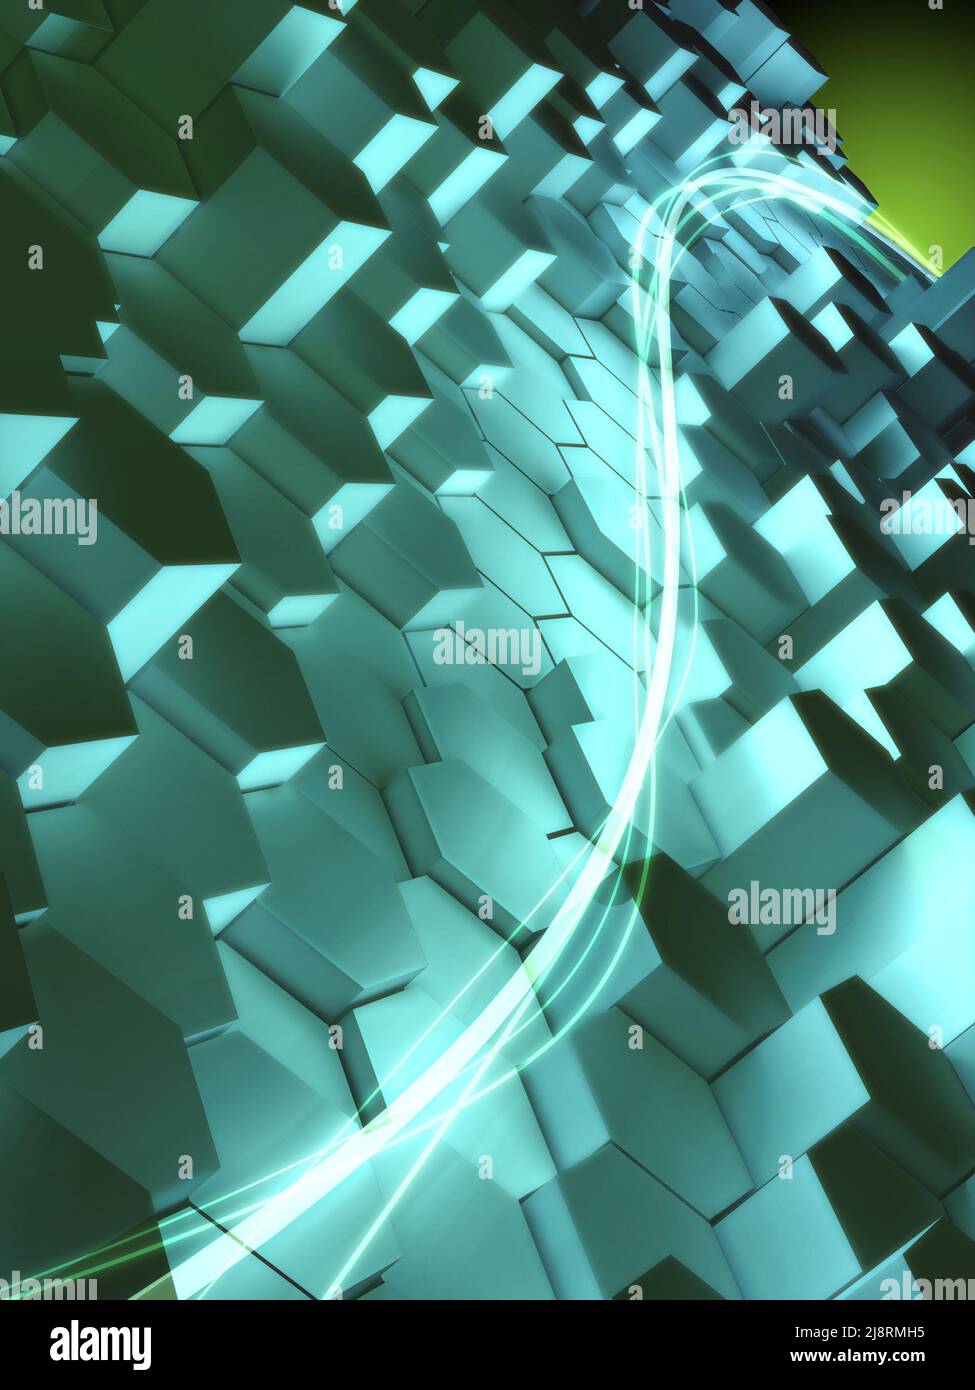 High-Tech-Hintergrund mit hellblau als dominante Farbe. Digitale Illustration Stockfoto